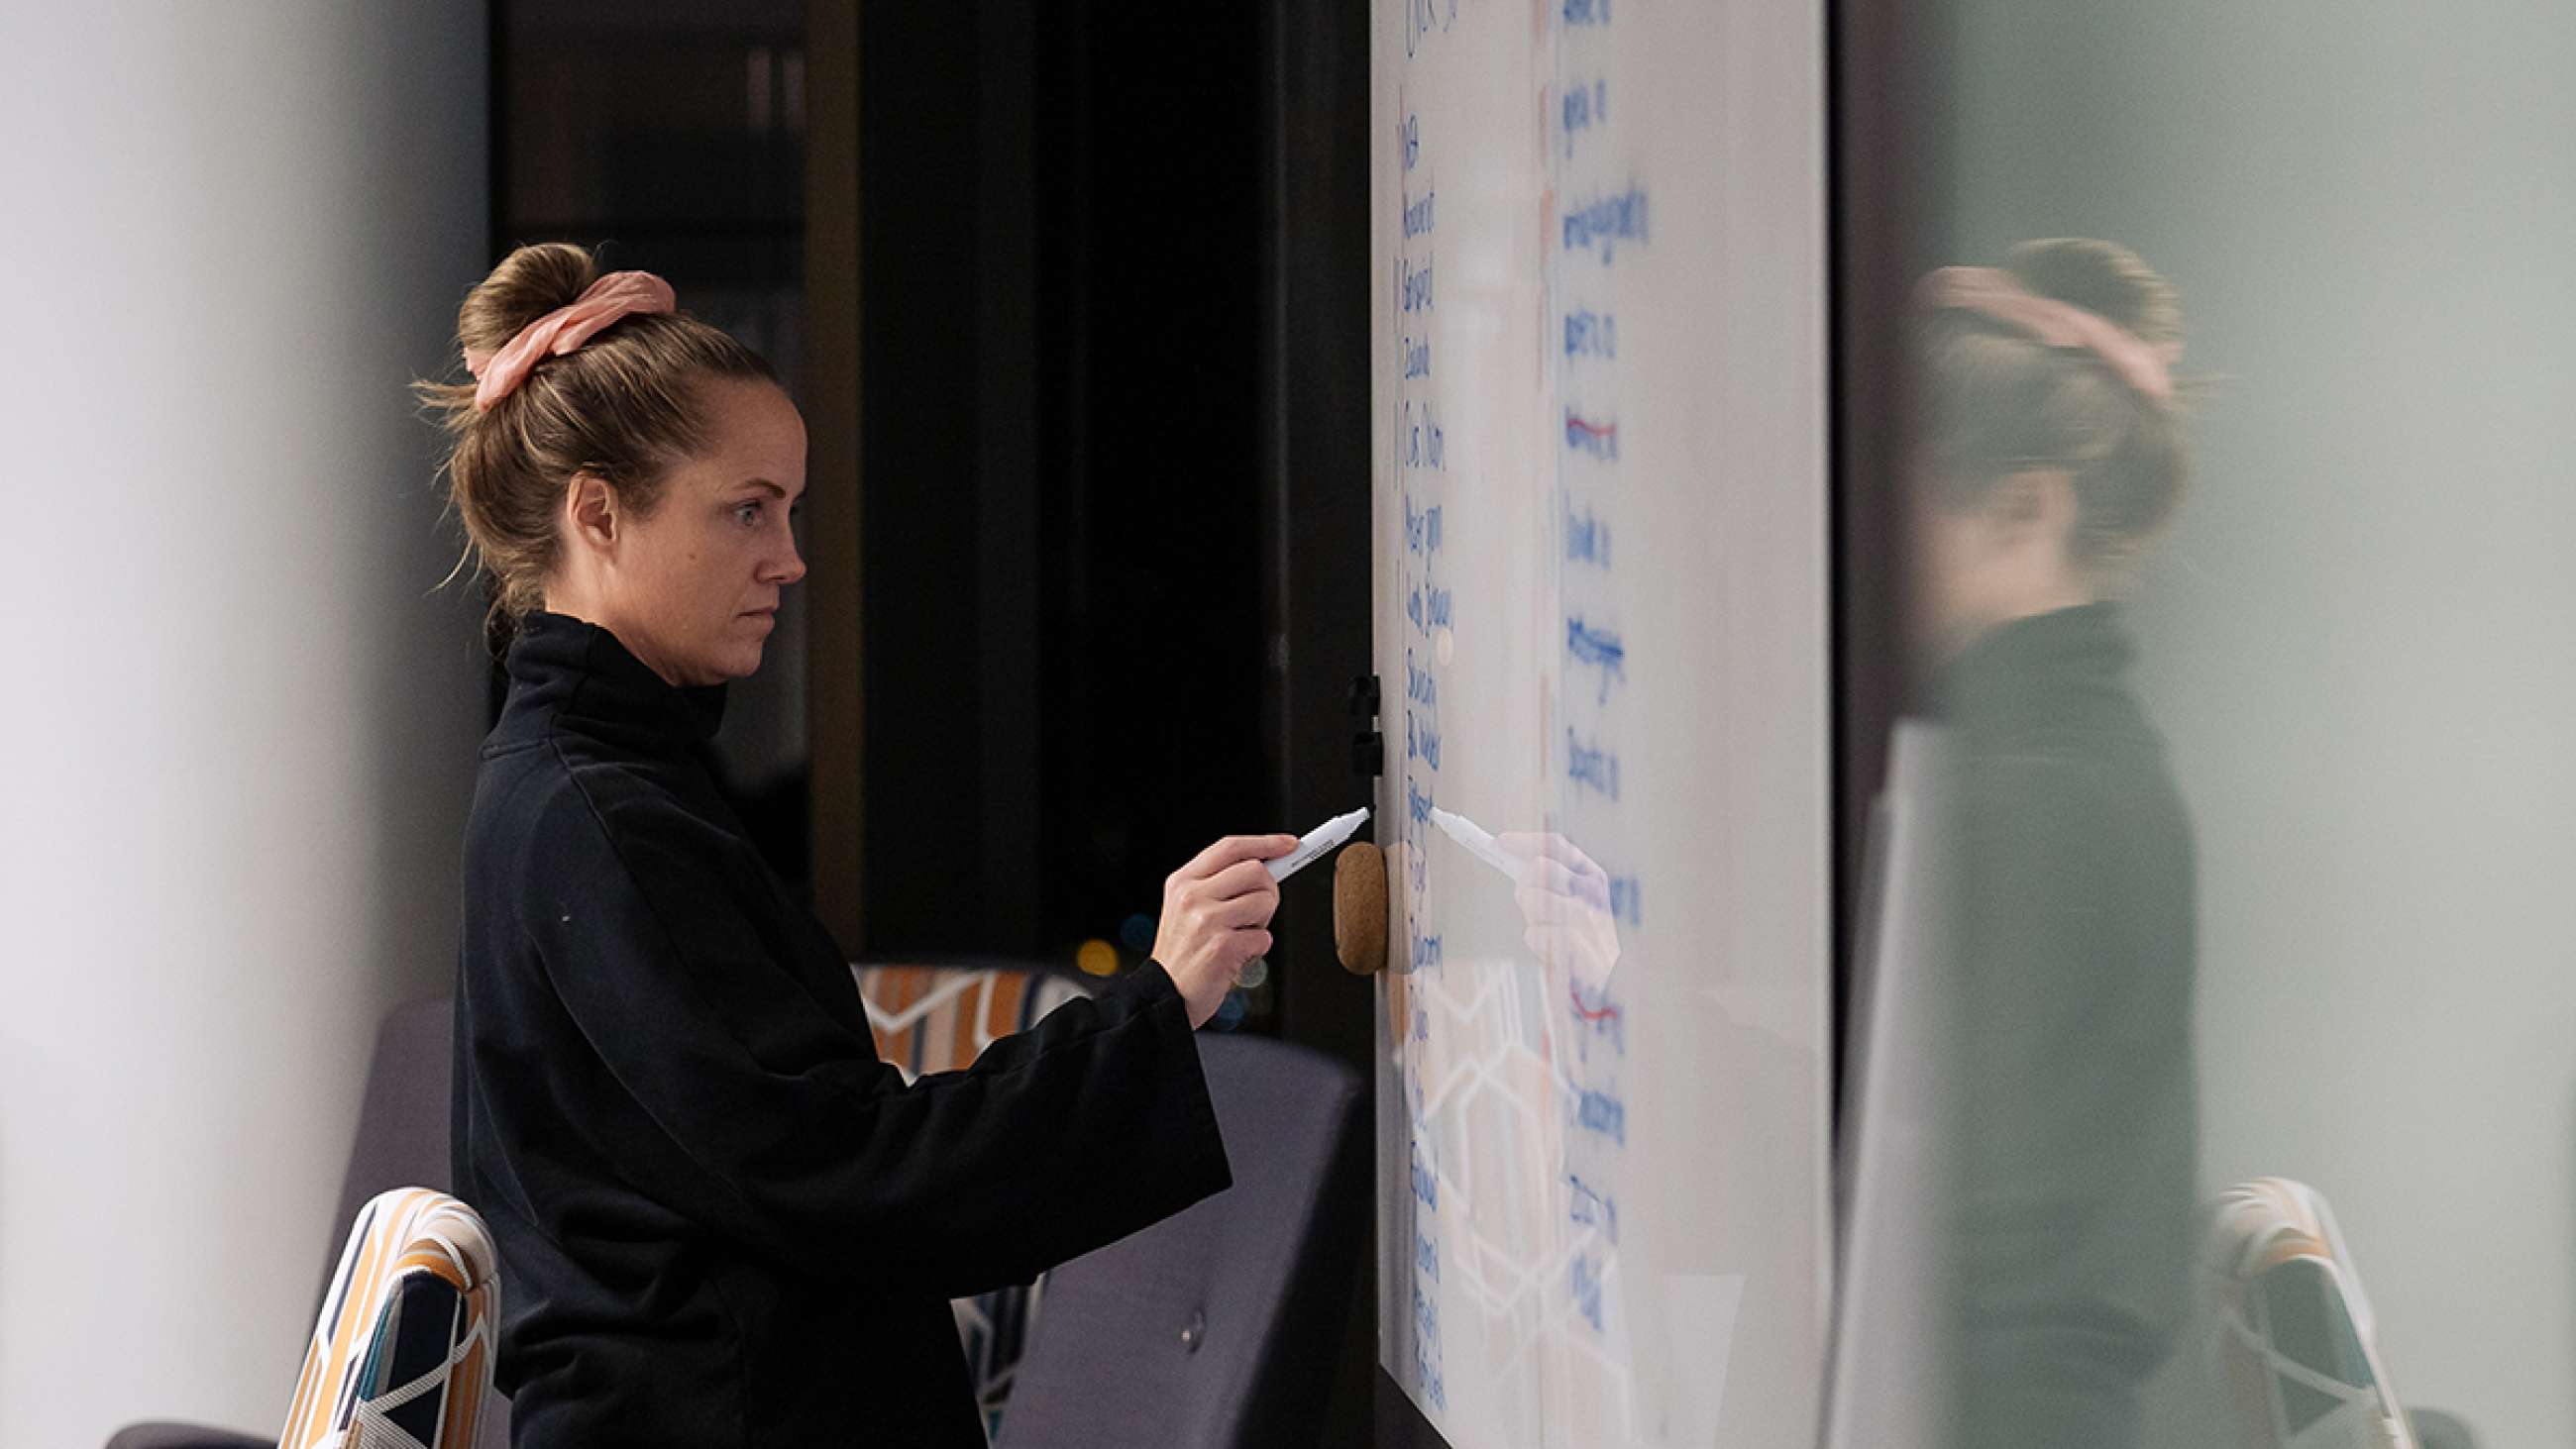 CRO-experten Monica Solberg skriver med tusch på en whiteboardtavla